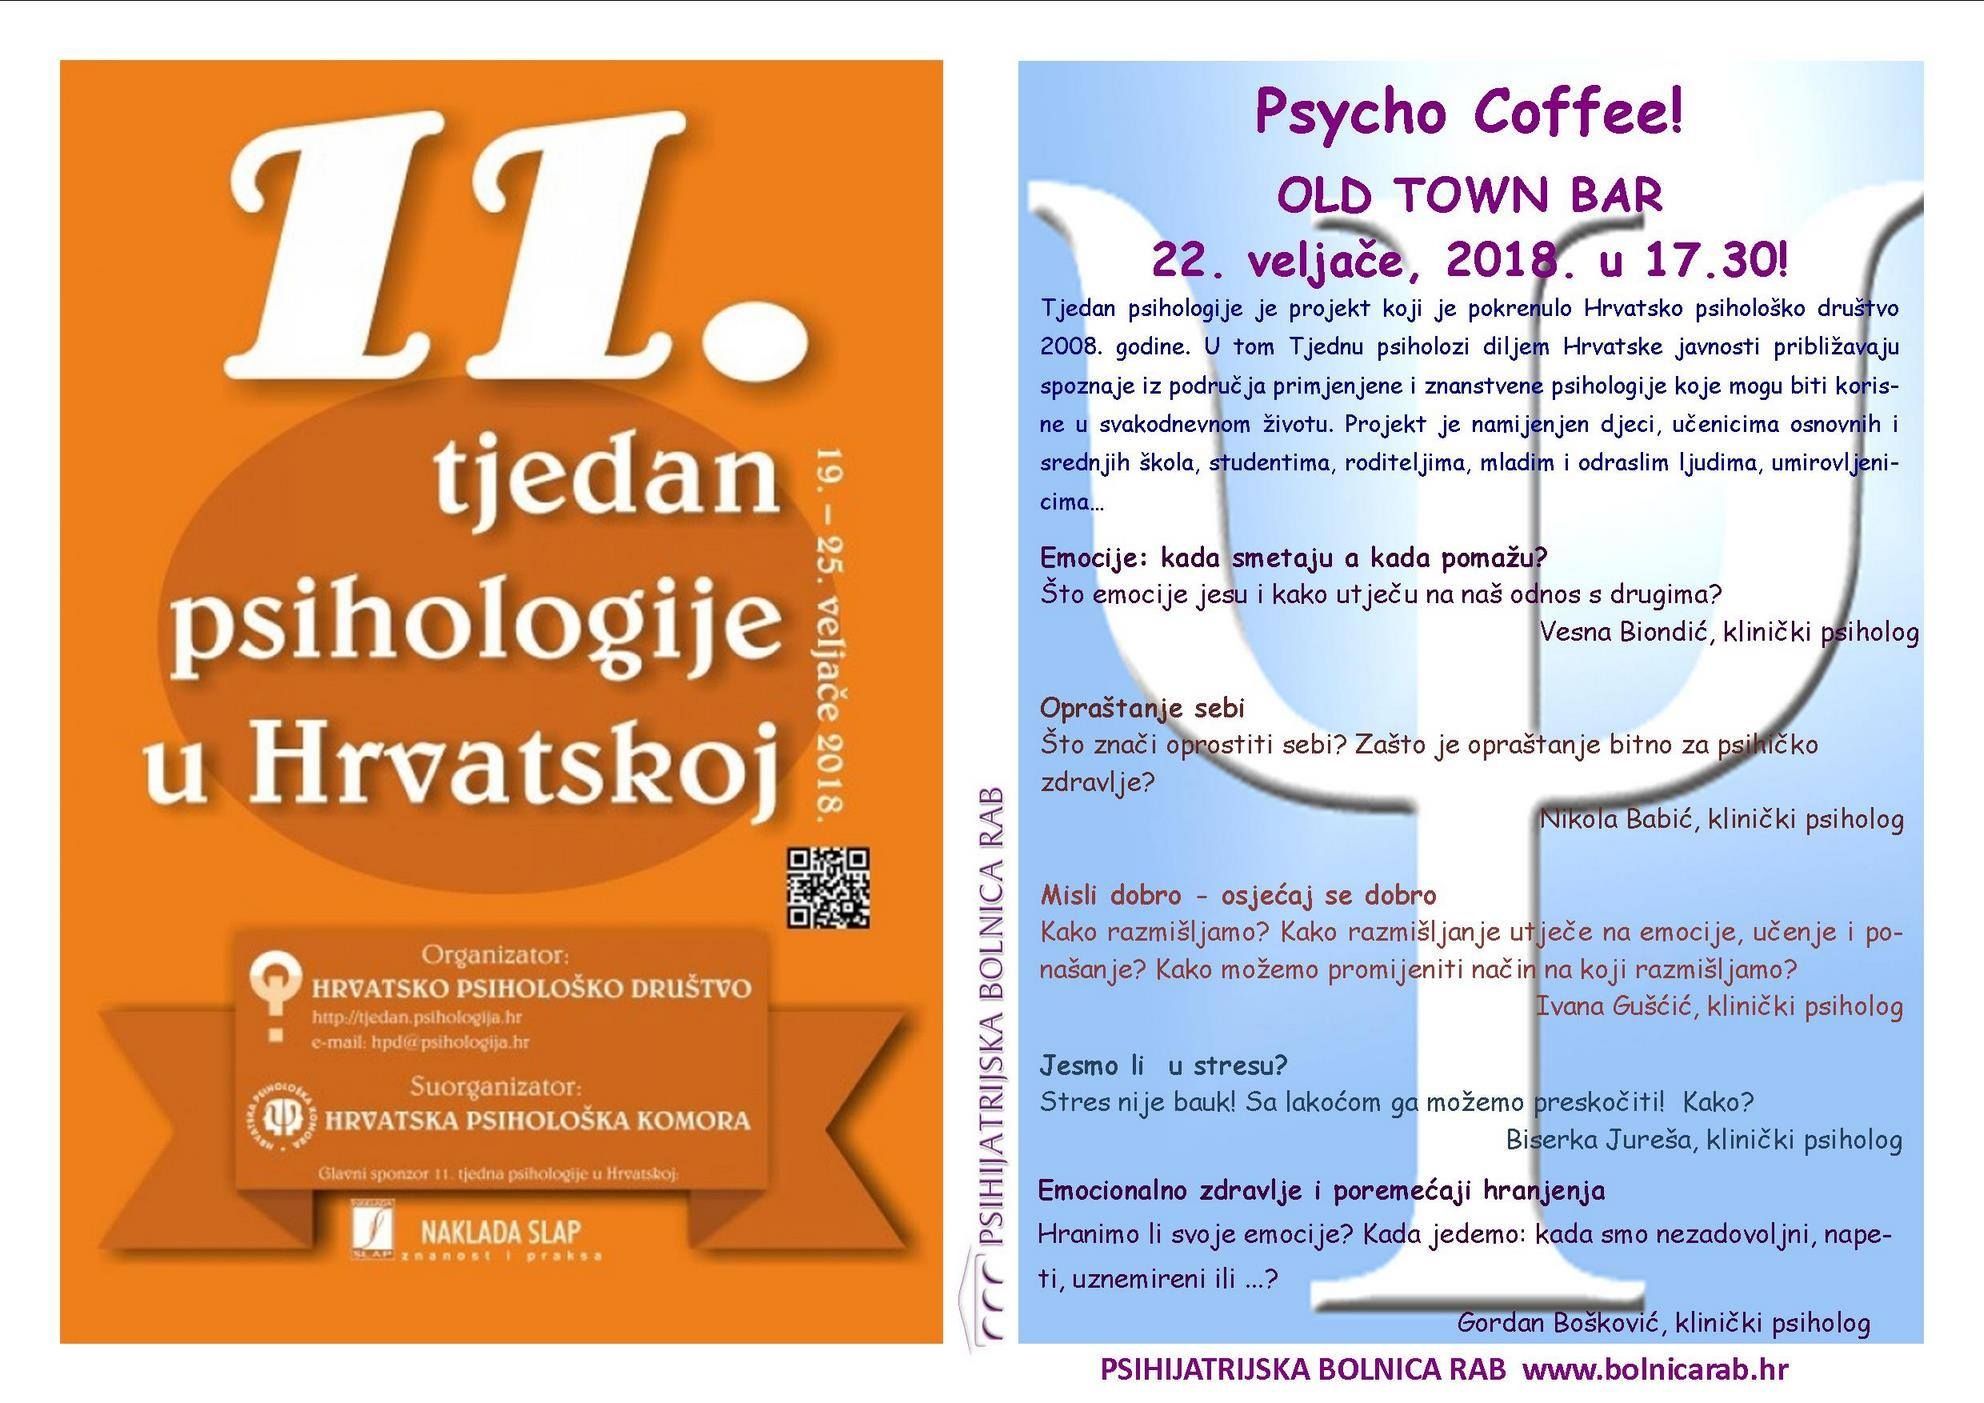 U “Tjednu psihologije” svratite na popodnevnu “Psycho Coffee”! / OLD TOWN BAR – 22.2.2018. u 17.30h